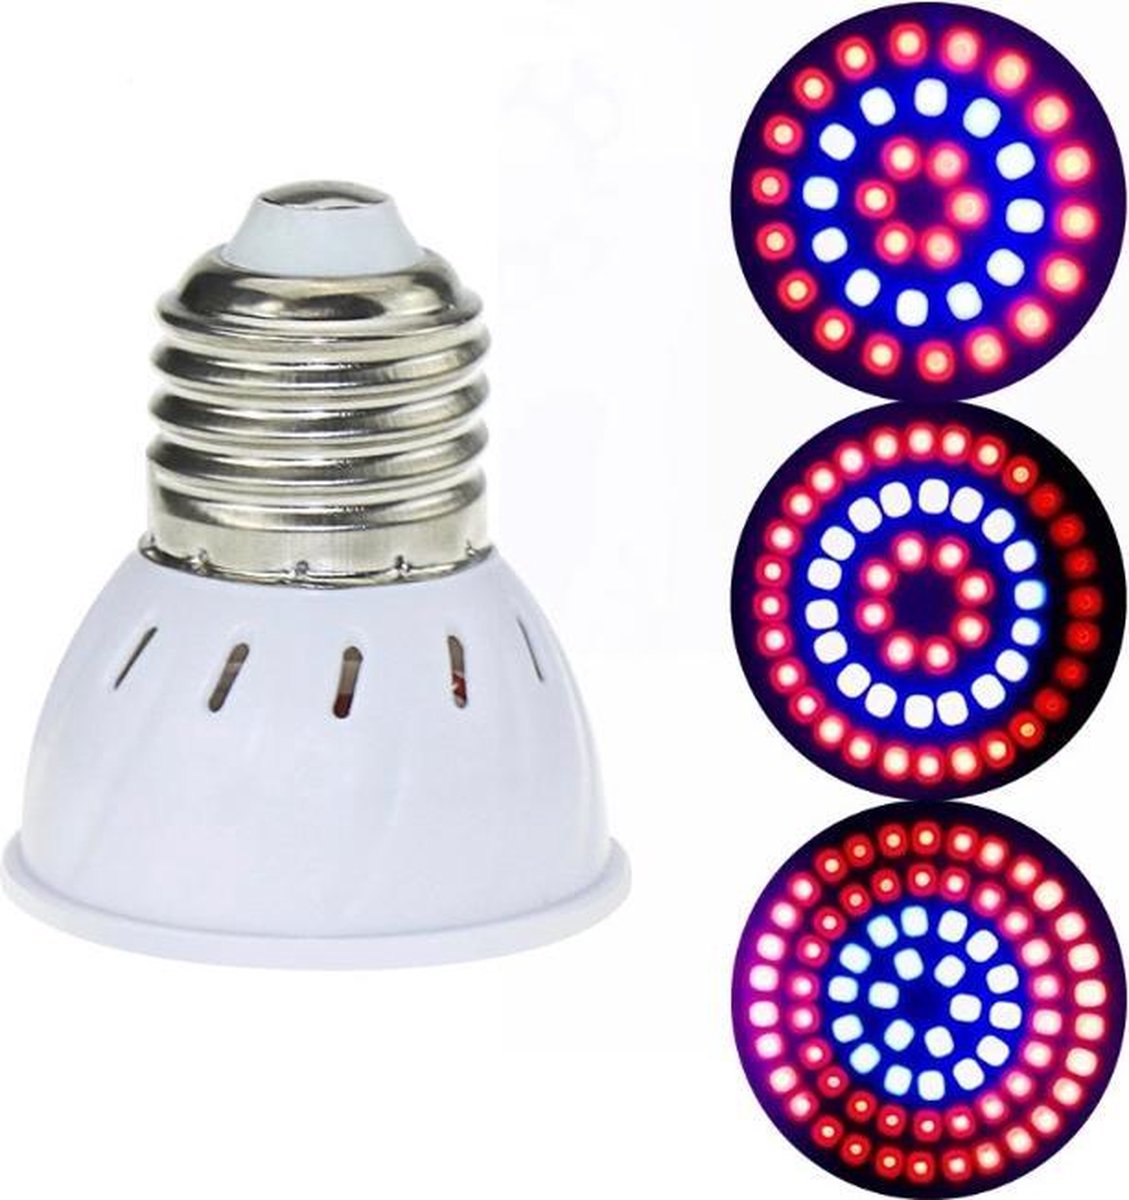 bol.com | LED Groei Lamp met 54 leds |KWEEK led lamp |Voor Groei en Bloei |  3 Stuks /